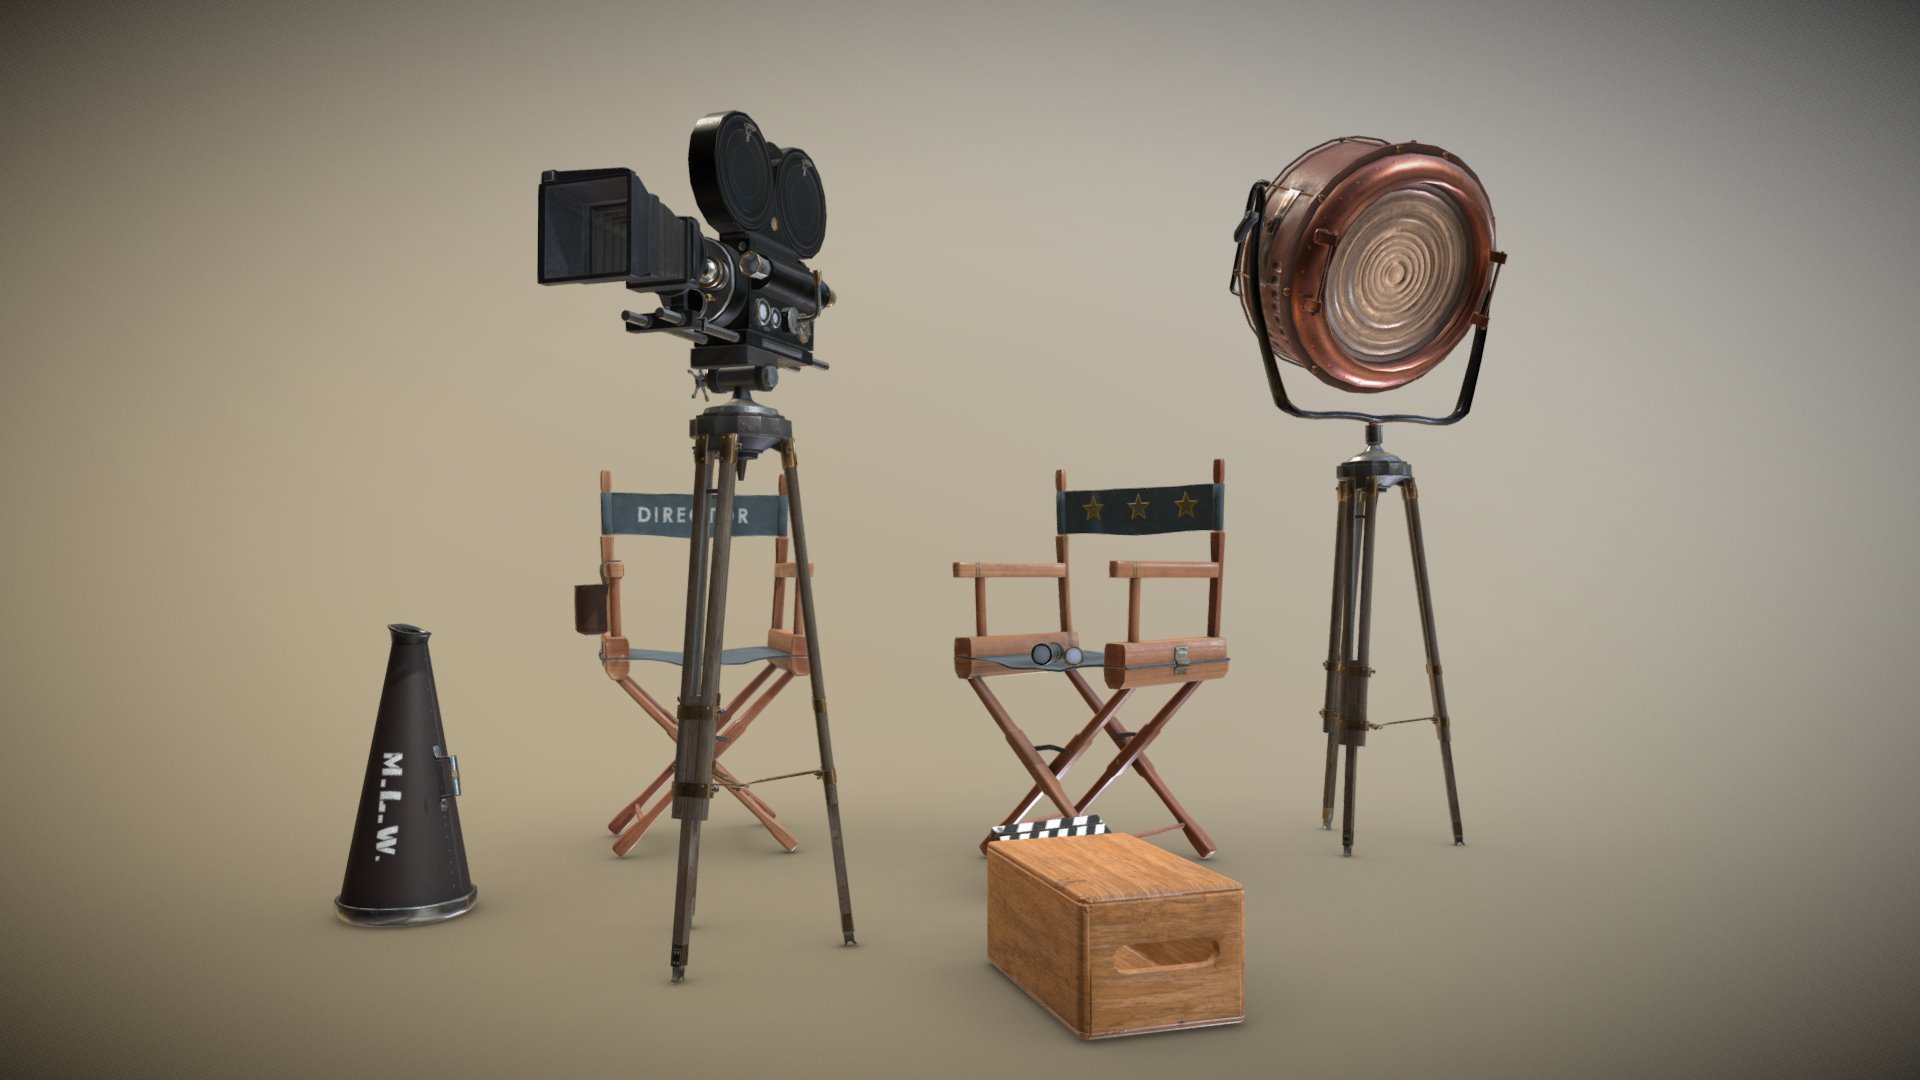 Vintage Movie Camera & Set Scene - 3D model by Mad_Lobster_Workshop 3d model